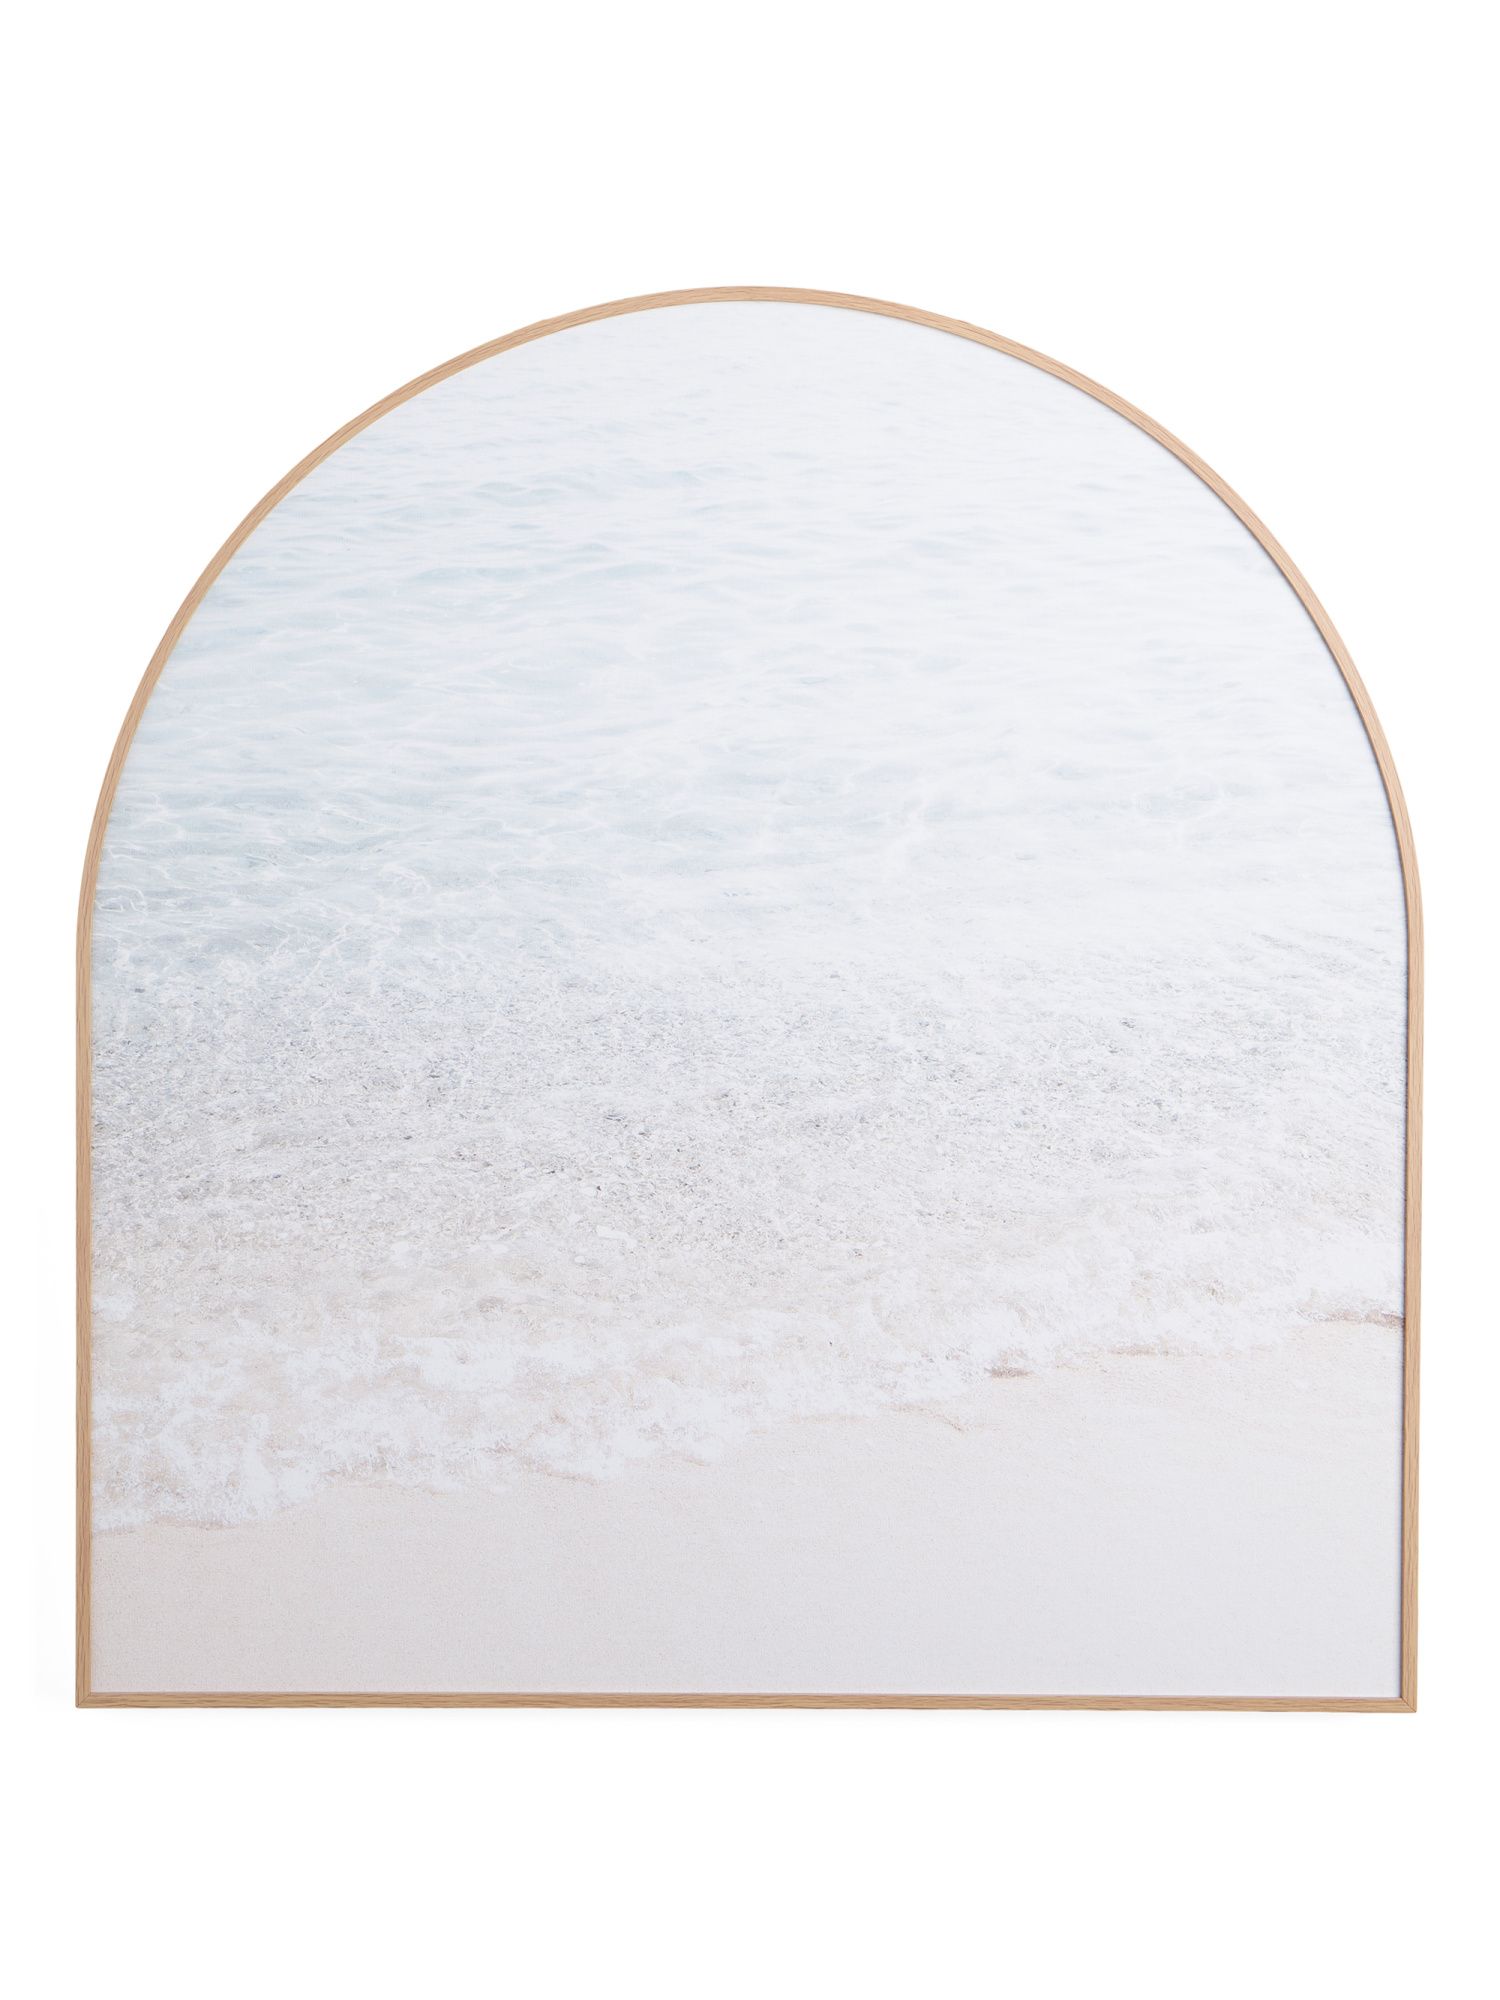 Shimmering Tide Framed Arch Wall Decor | Pillows & Decor | Marshalls | Marshalls